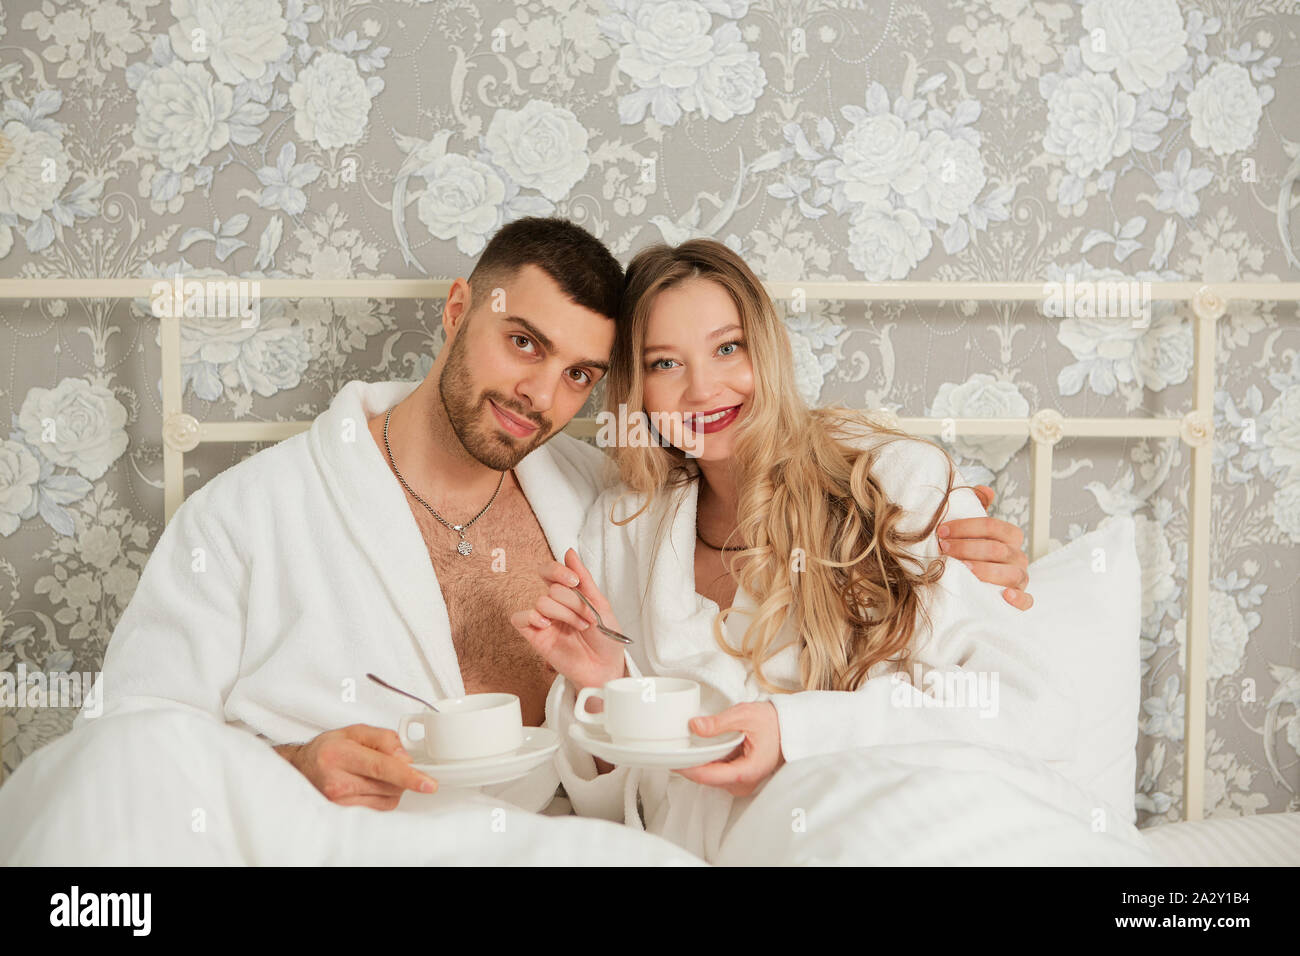 Porträt eines jungen Paares in weißen Kitteln trinken Kaffee im Bett. Stockfoto